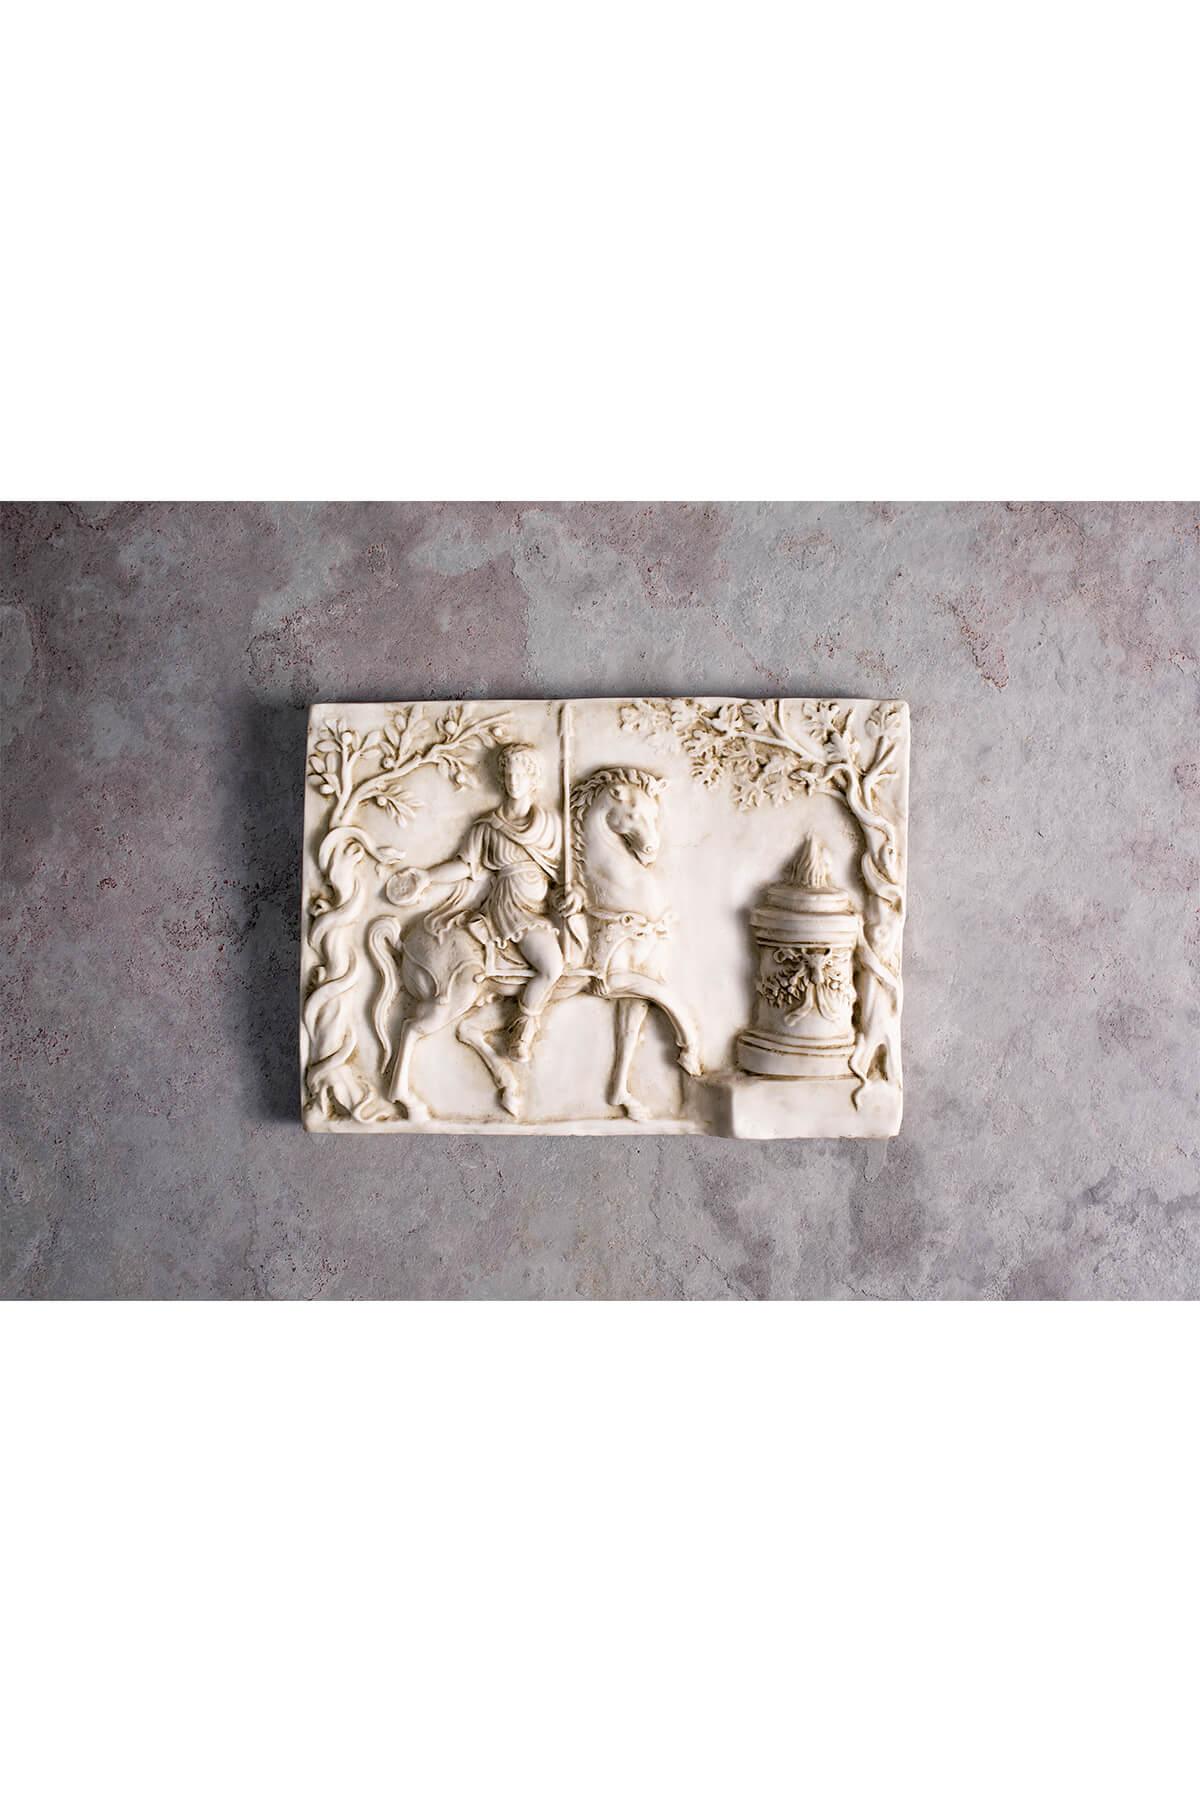 Cast Pinax Relief, Torso No:1, Torso No:2, Hermes Bust Medium, Corinthian Column For Sale